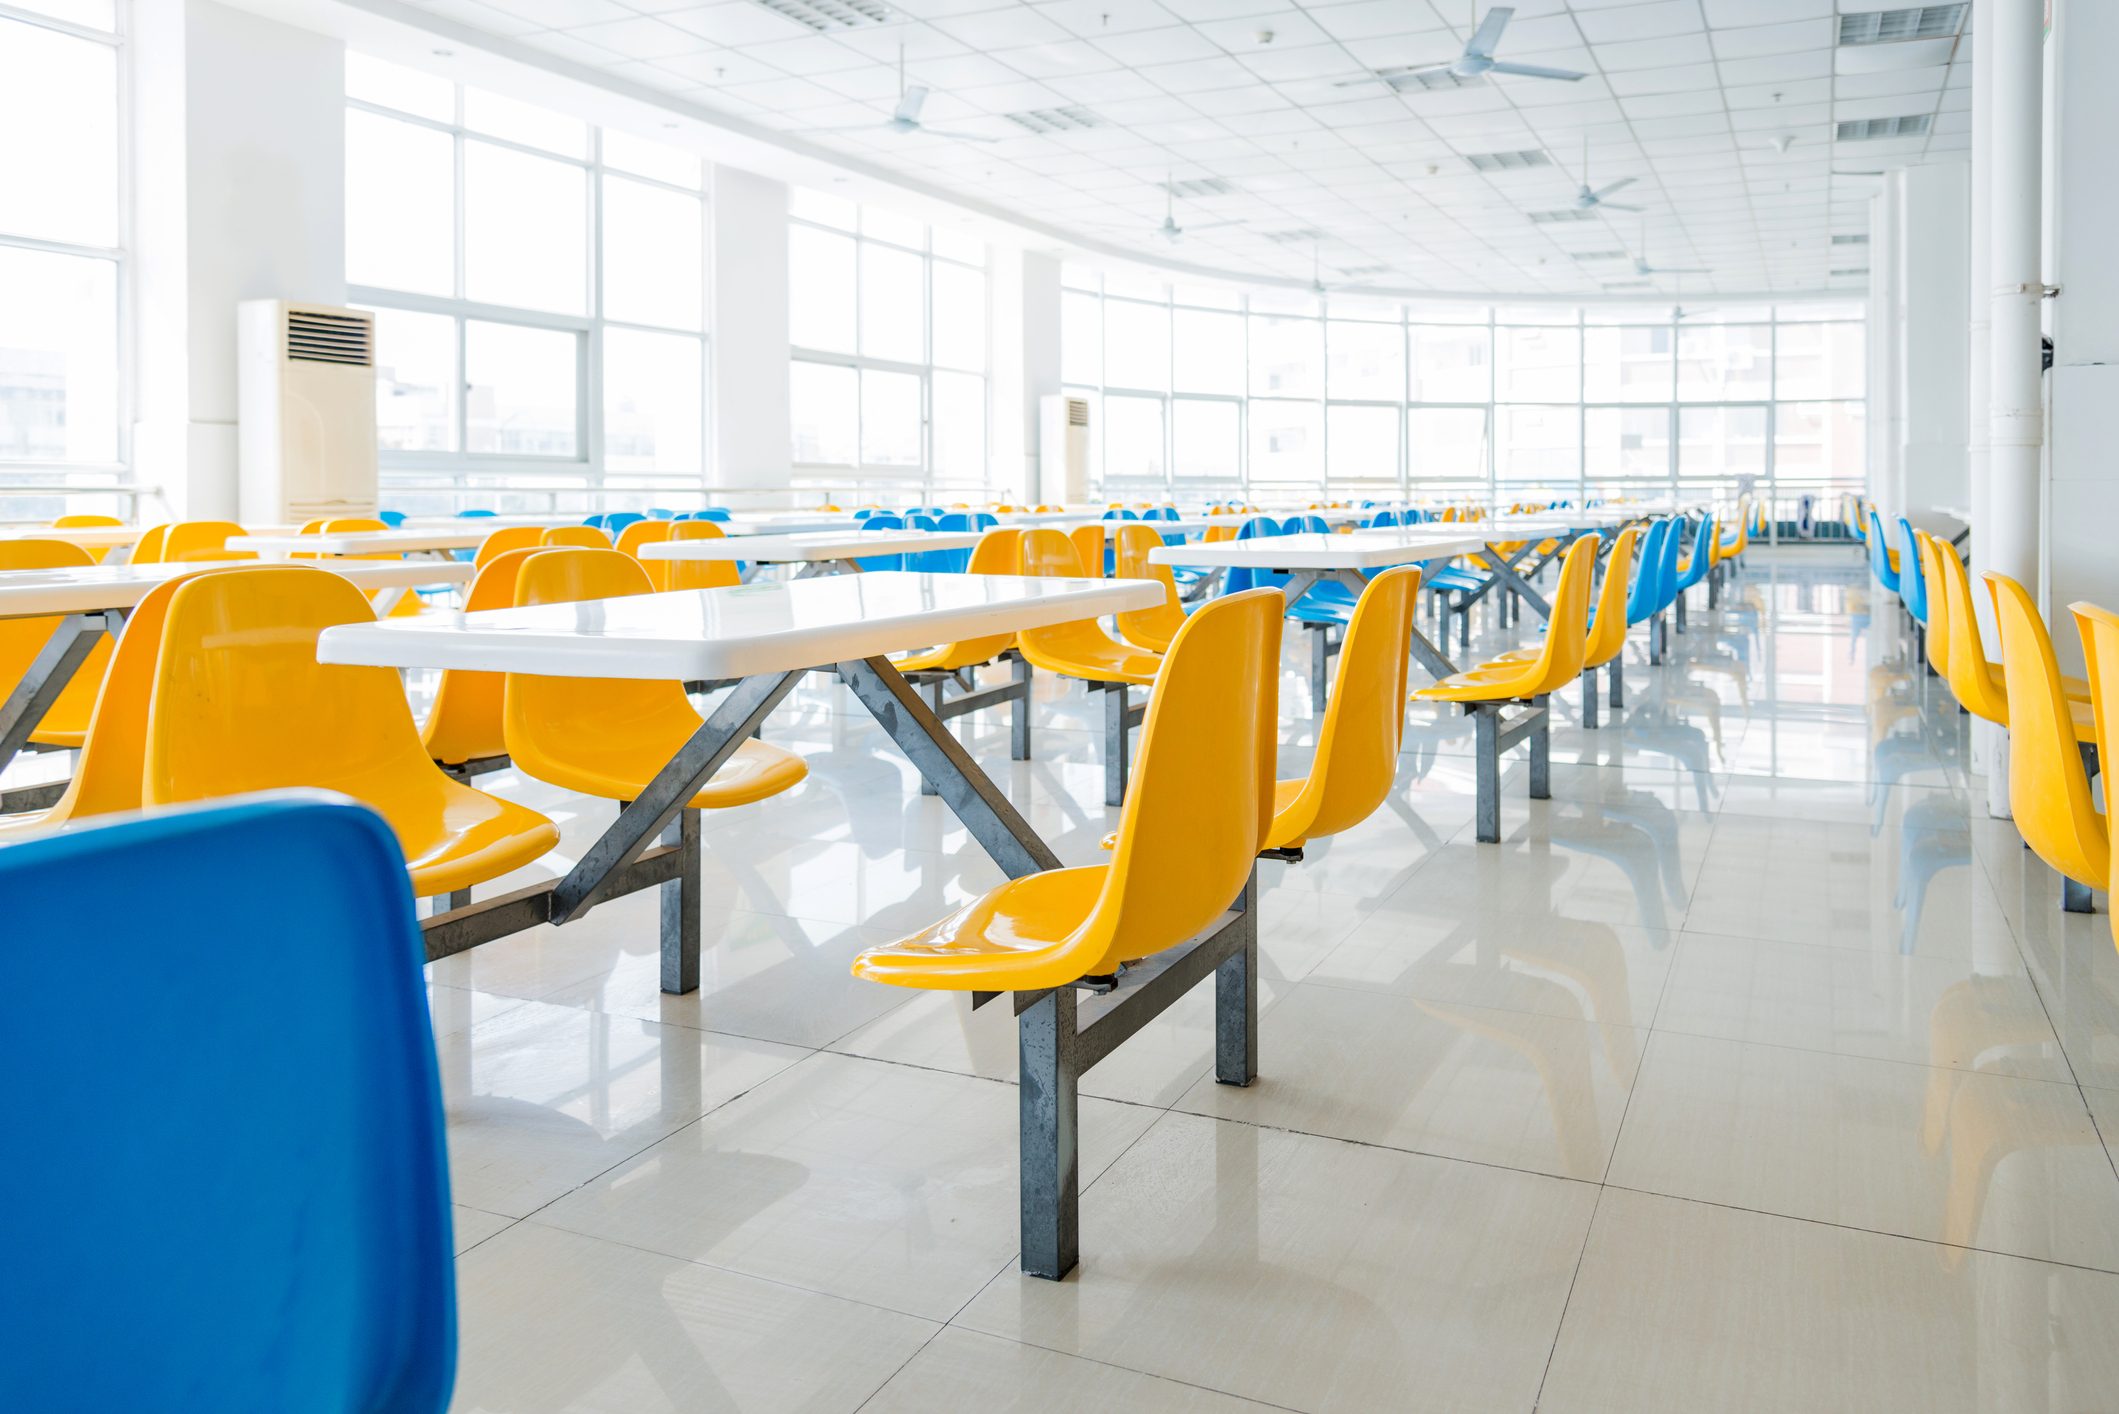 Empty school cafeteria